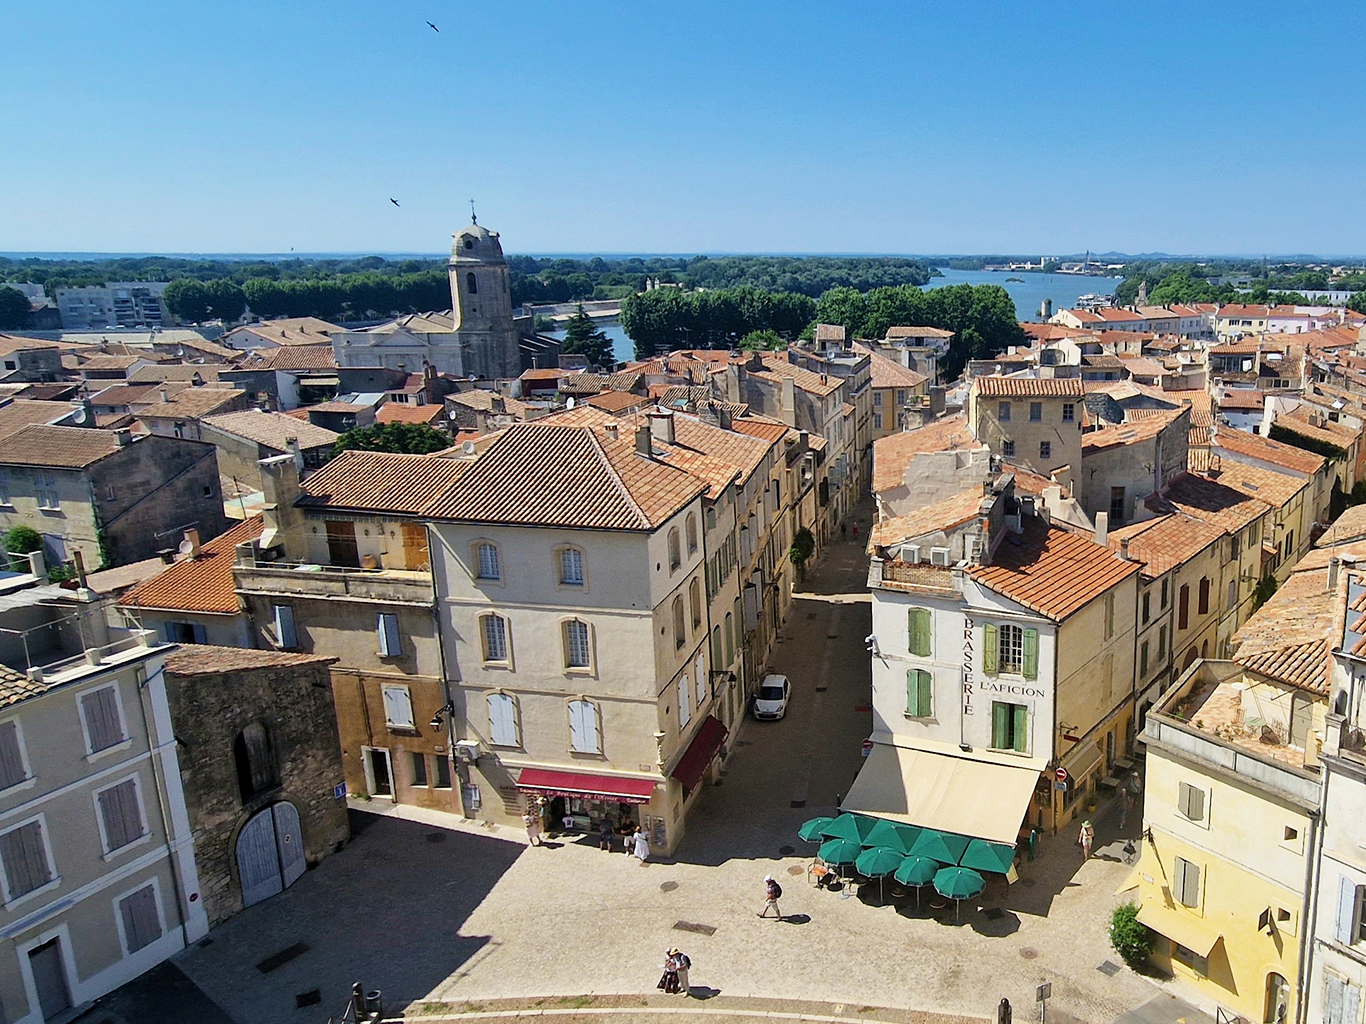 Arles bylo za časů Římanů hlavním městem římské Galie